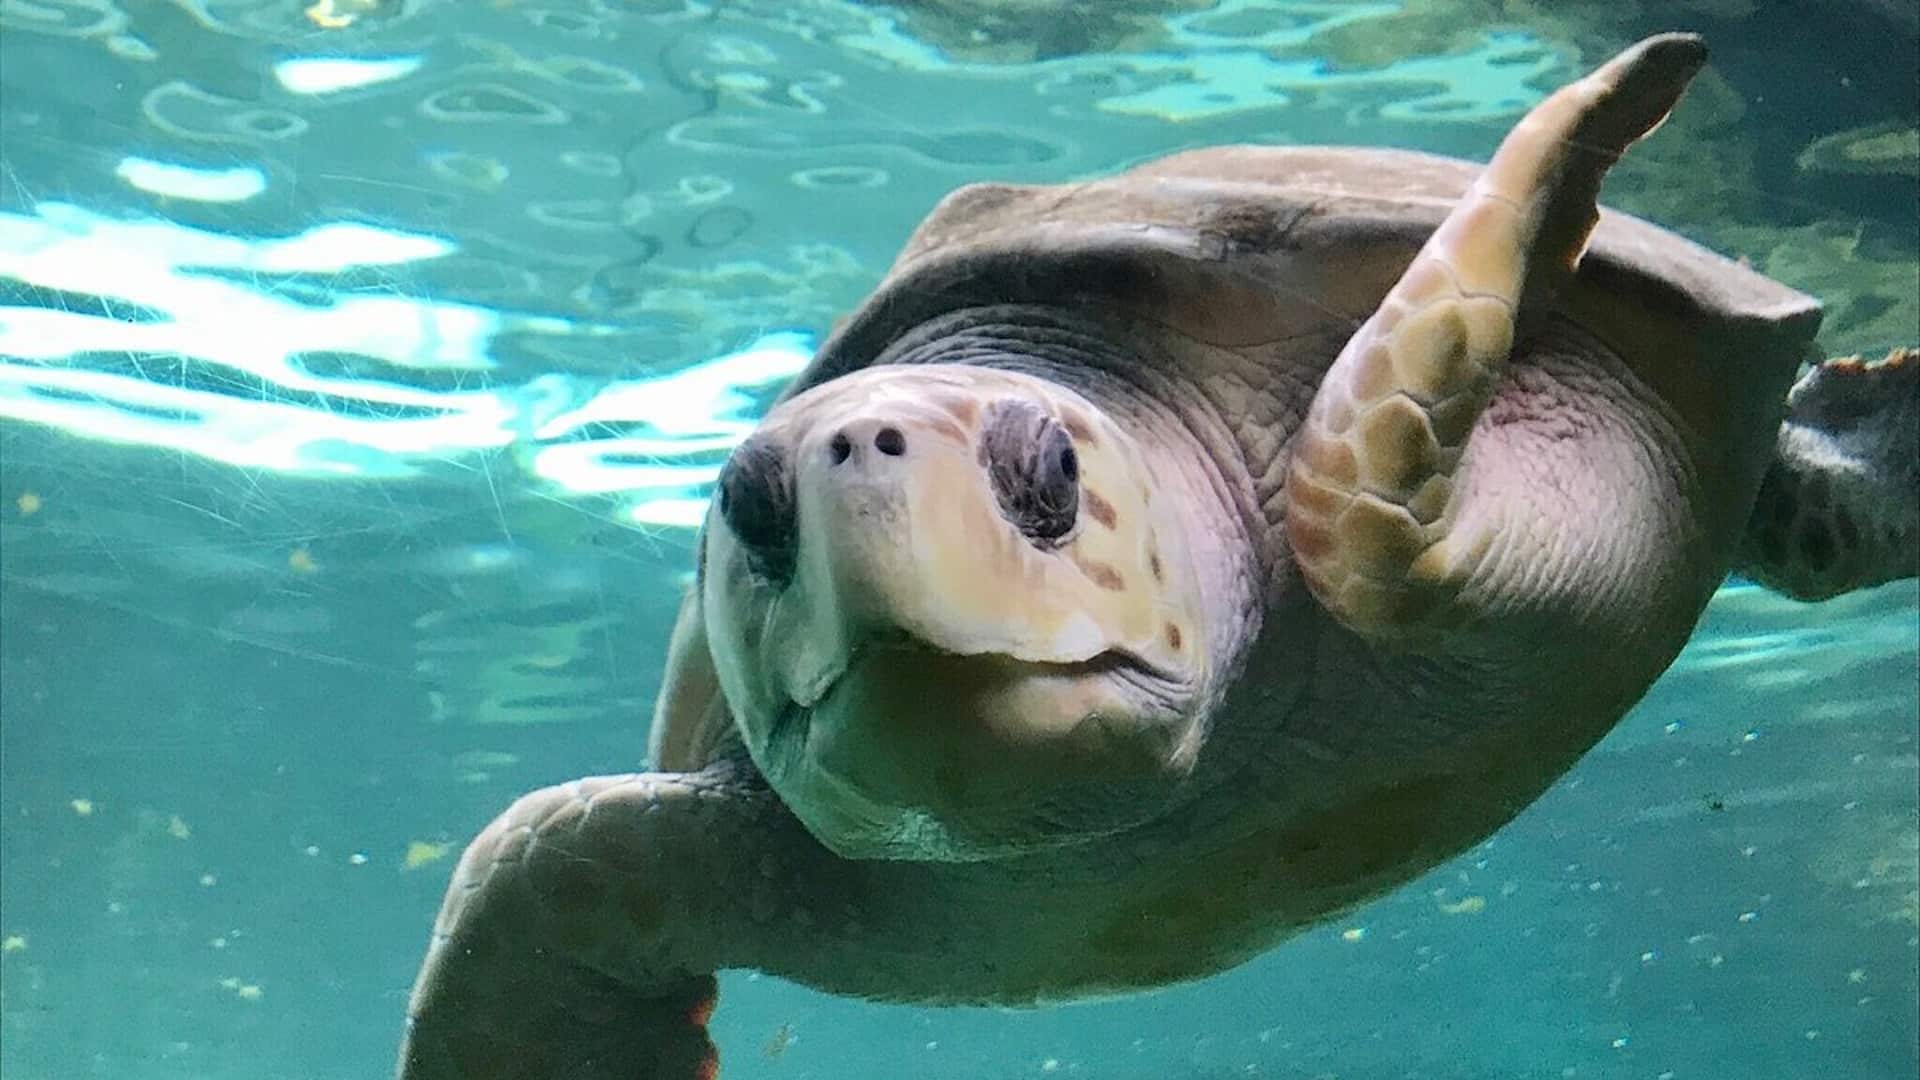 Oceanarium - Turtle Swimming